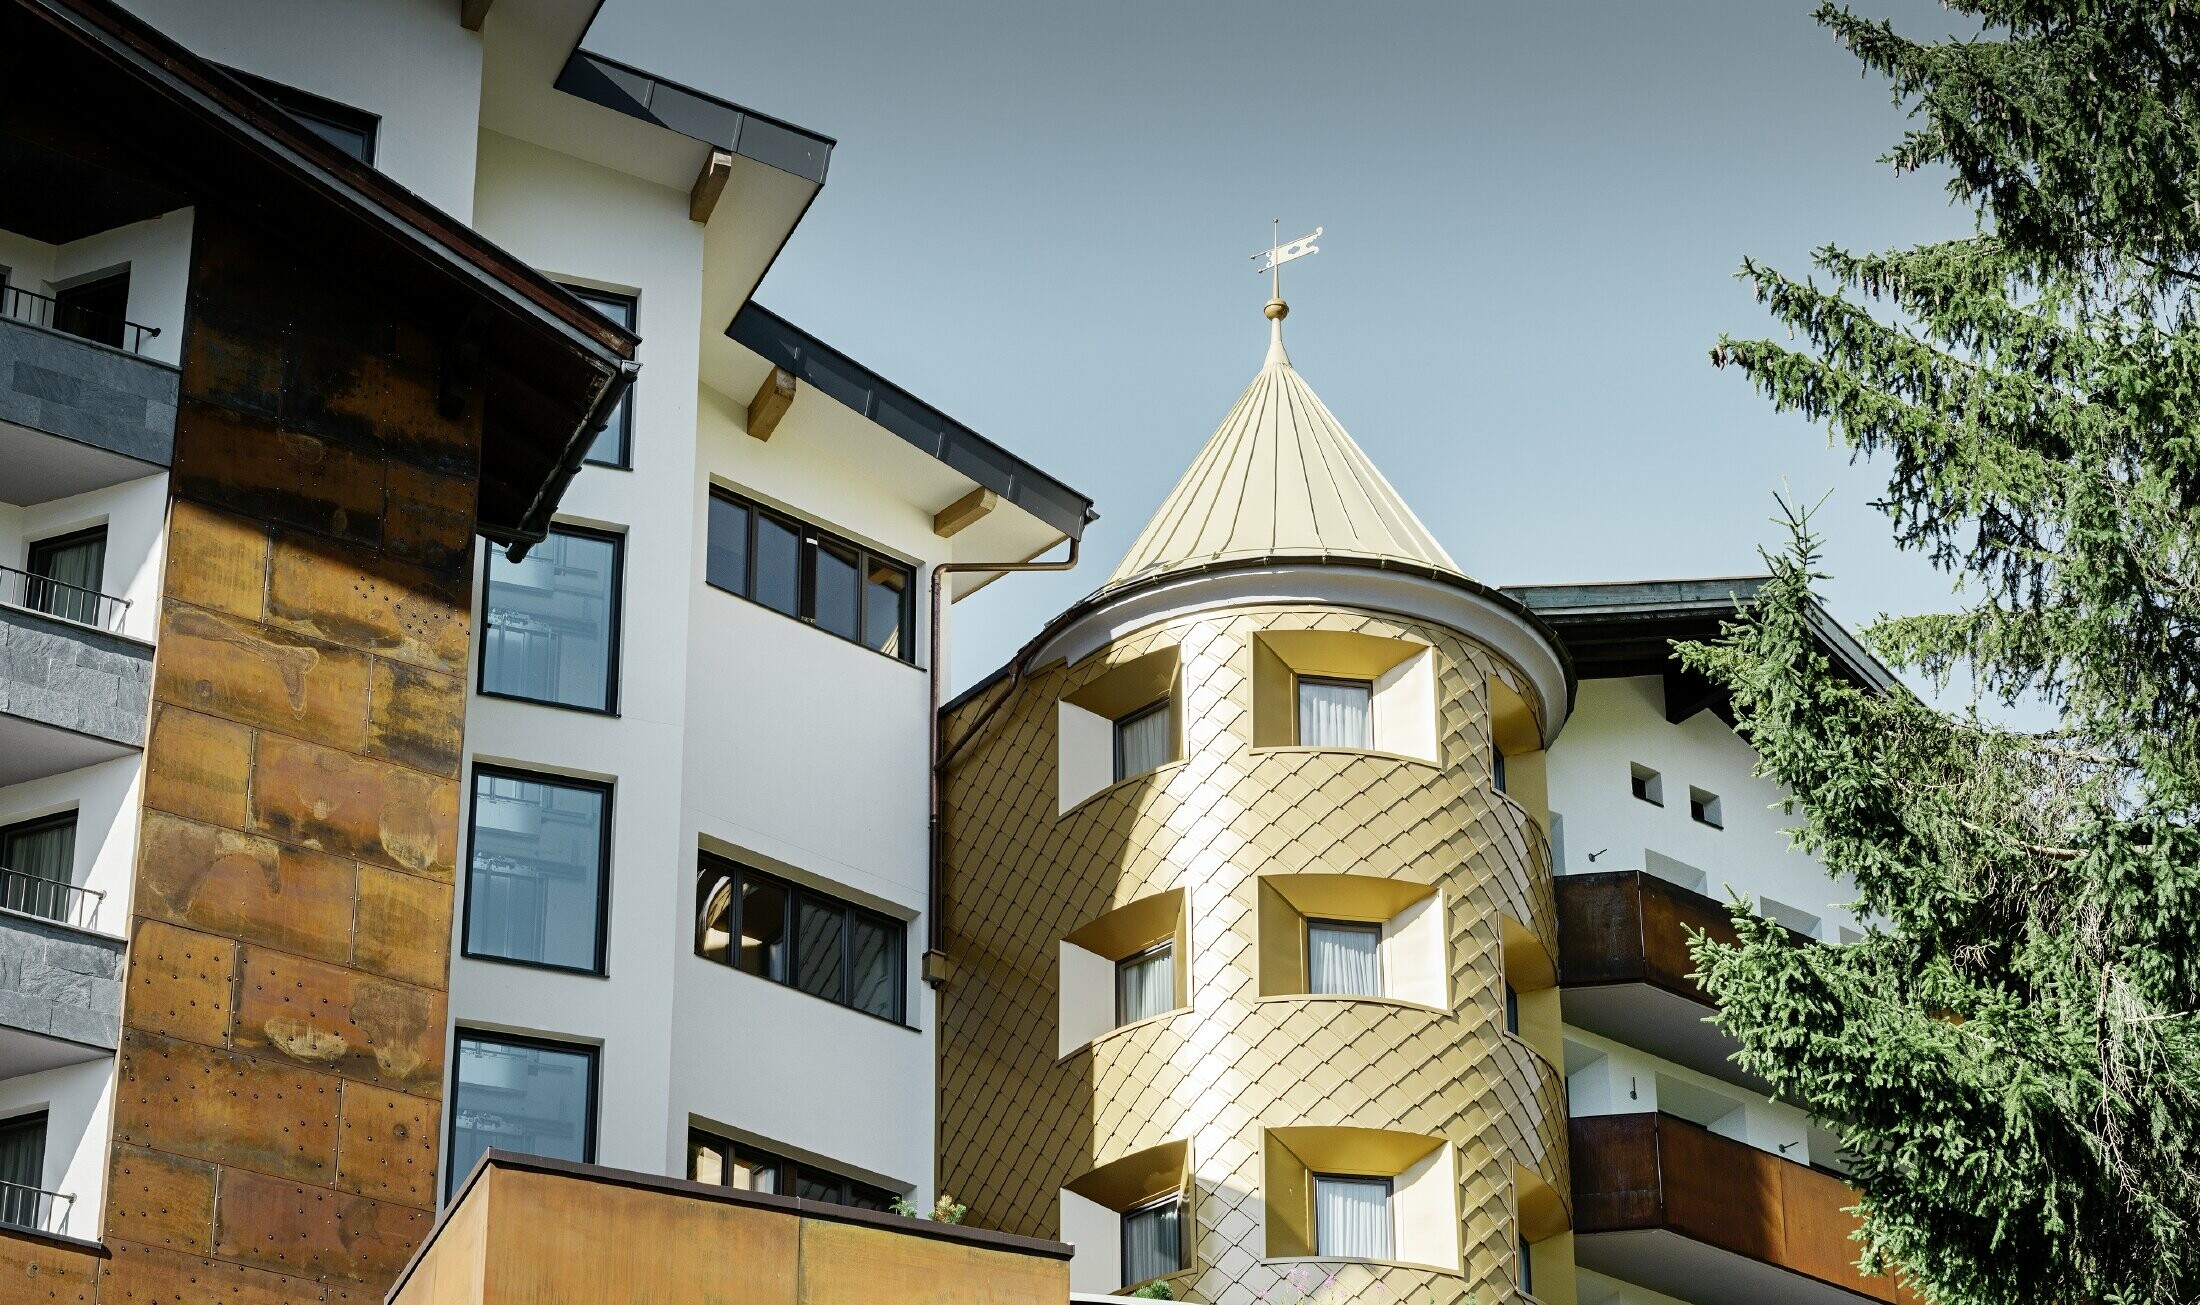 Traditioneel hotel in Ischgl (Oostenrijk) met houten balkonns en gevel en een toren met gouden aluminiumlosanges van PREFA